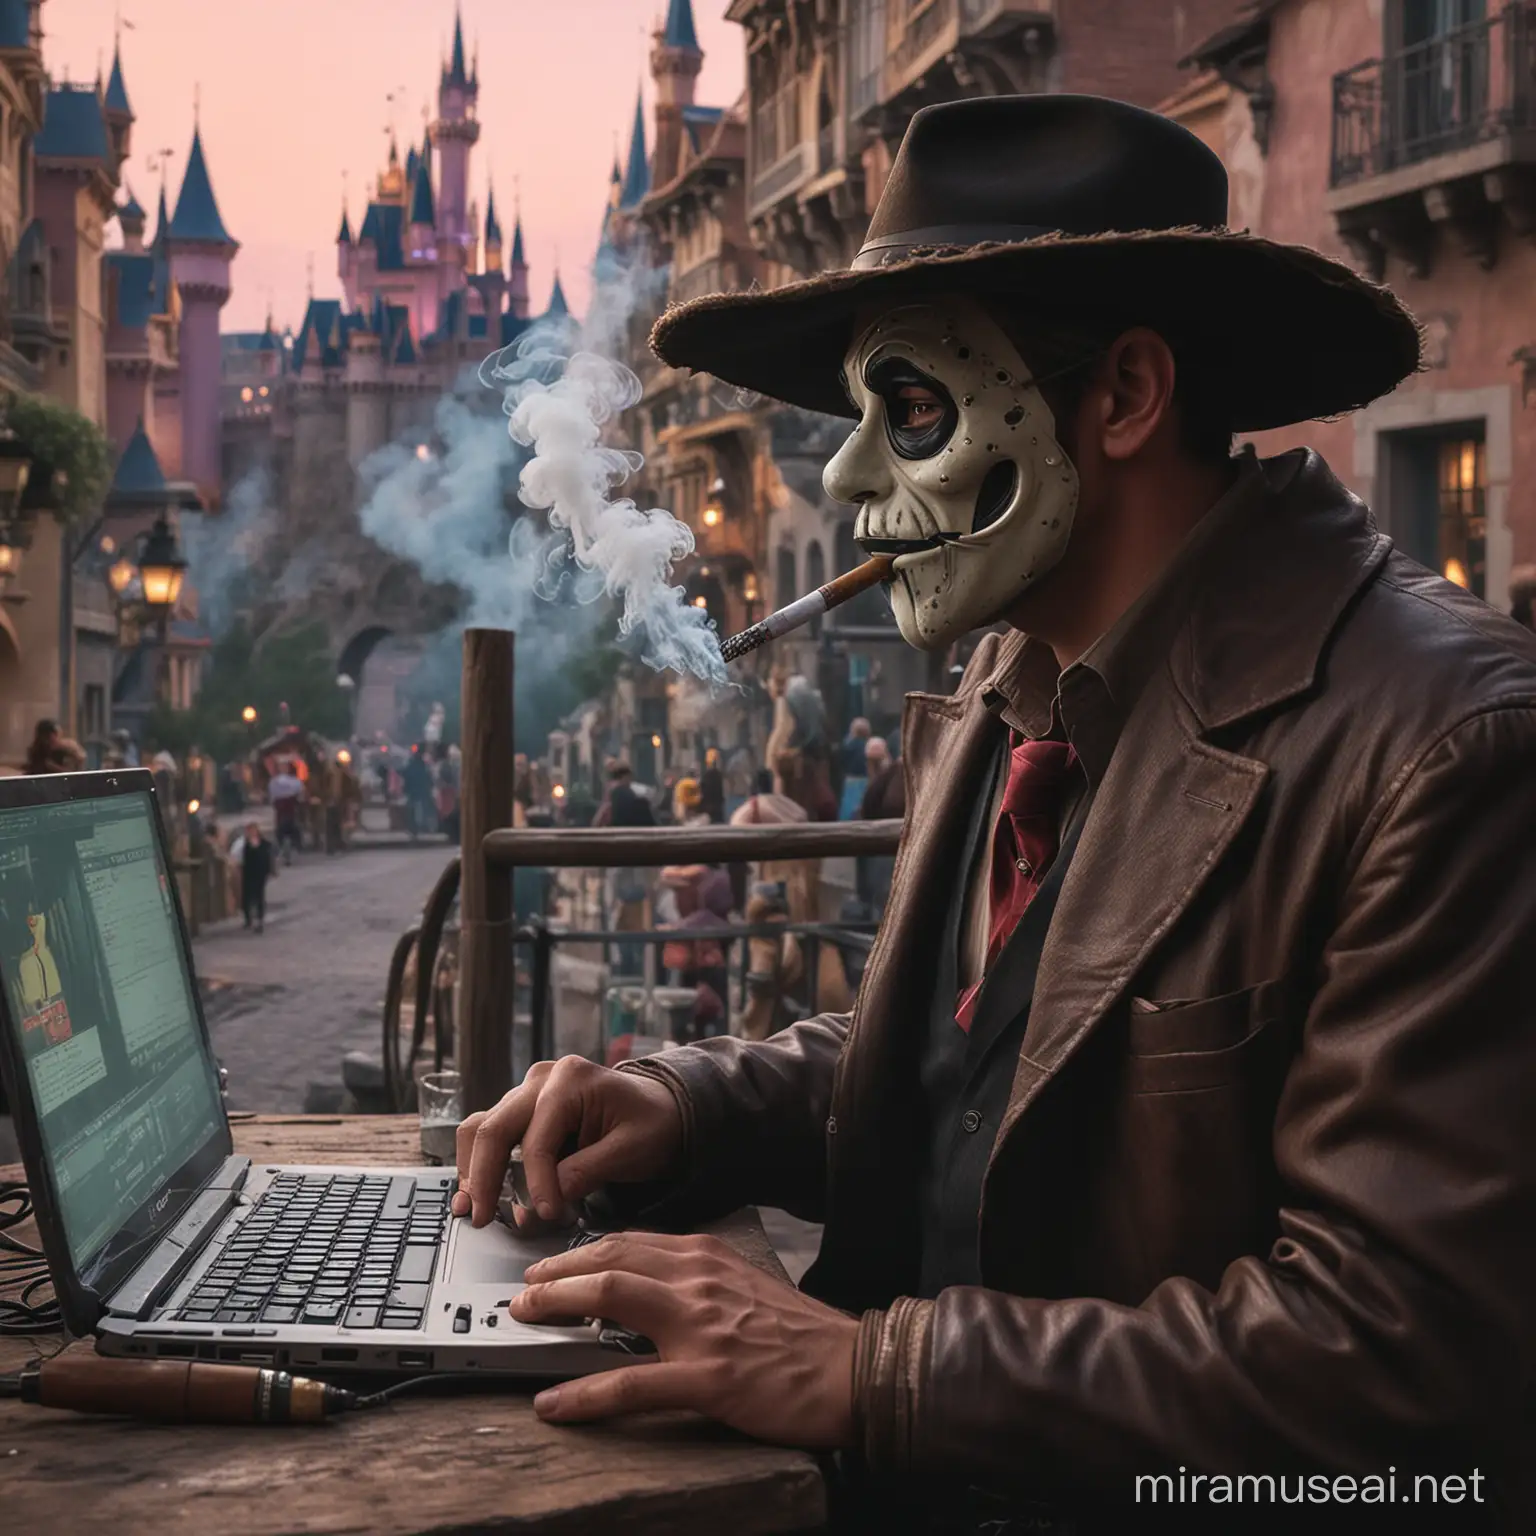 Gere um homem com a mascara de hack fumando charuto na paisagem da Disney 
Hackando no PC 